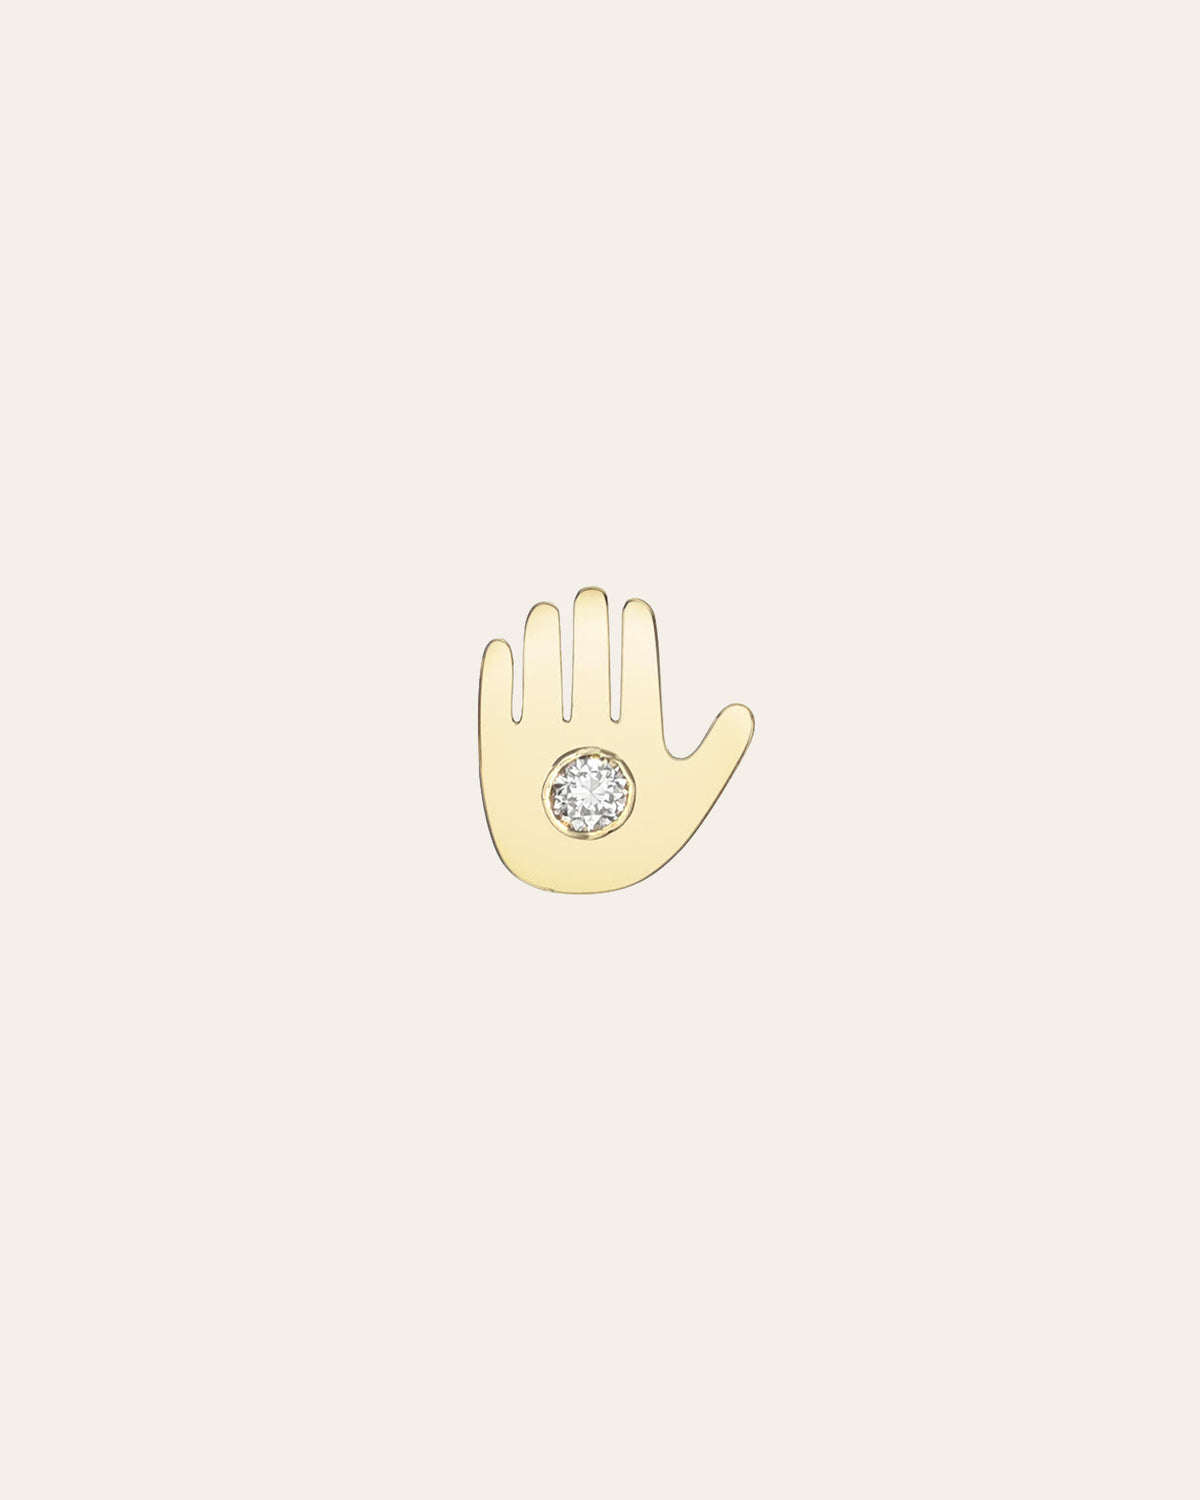 14k Gold Hamsa with Tiny Diamond for Locket